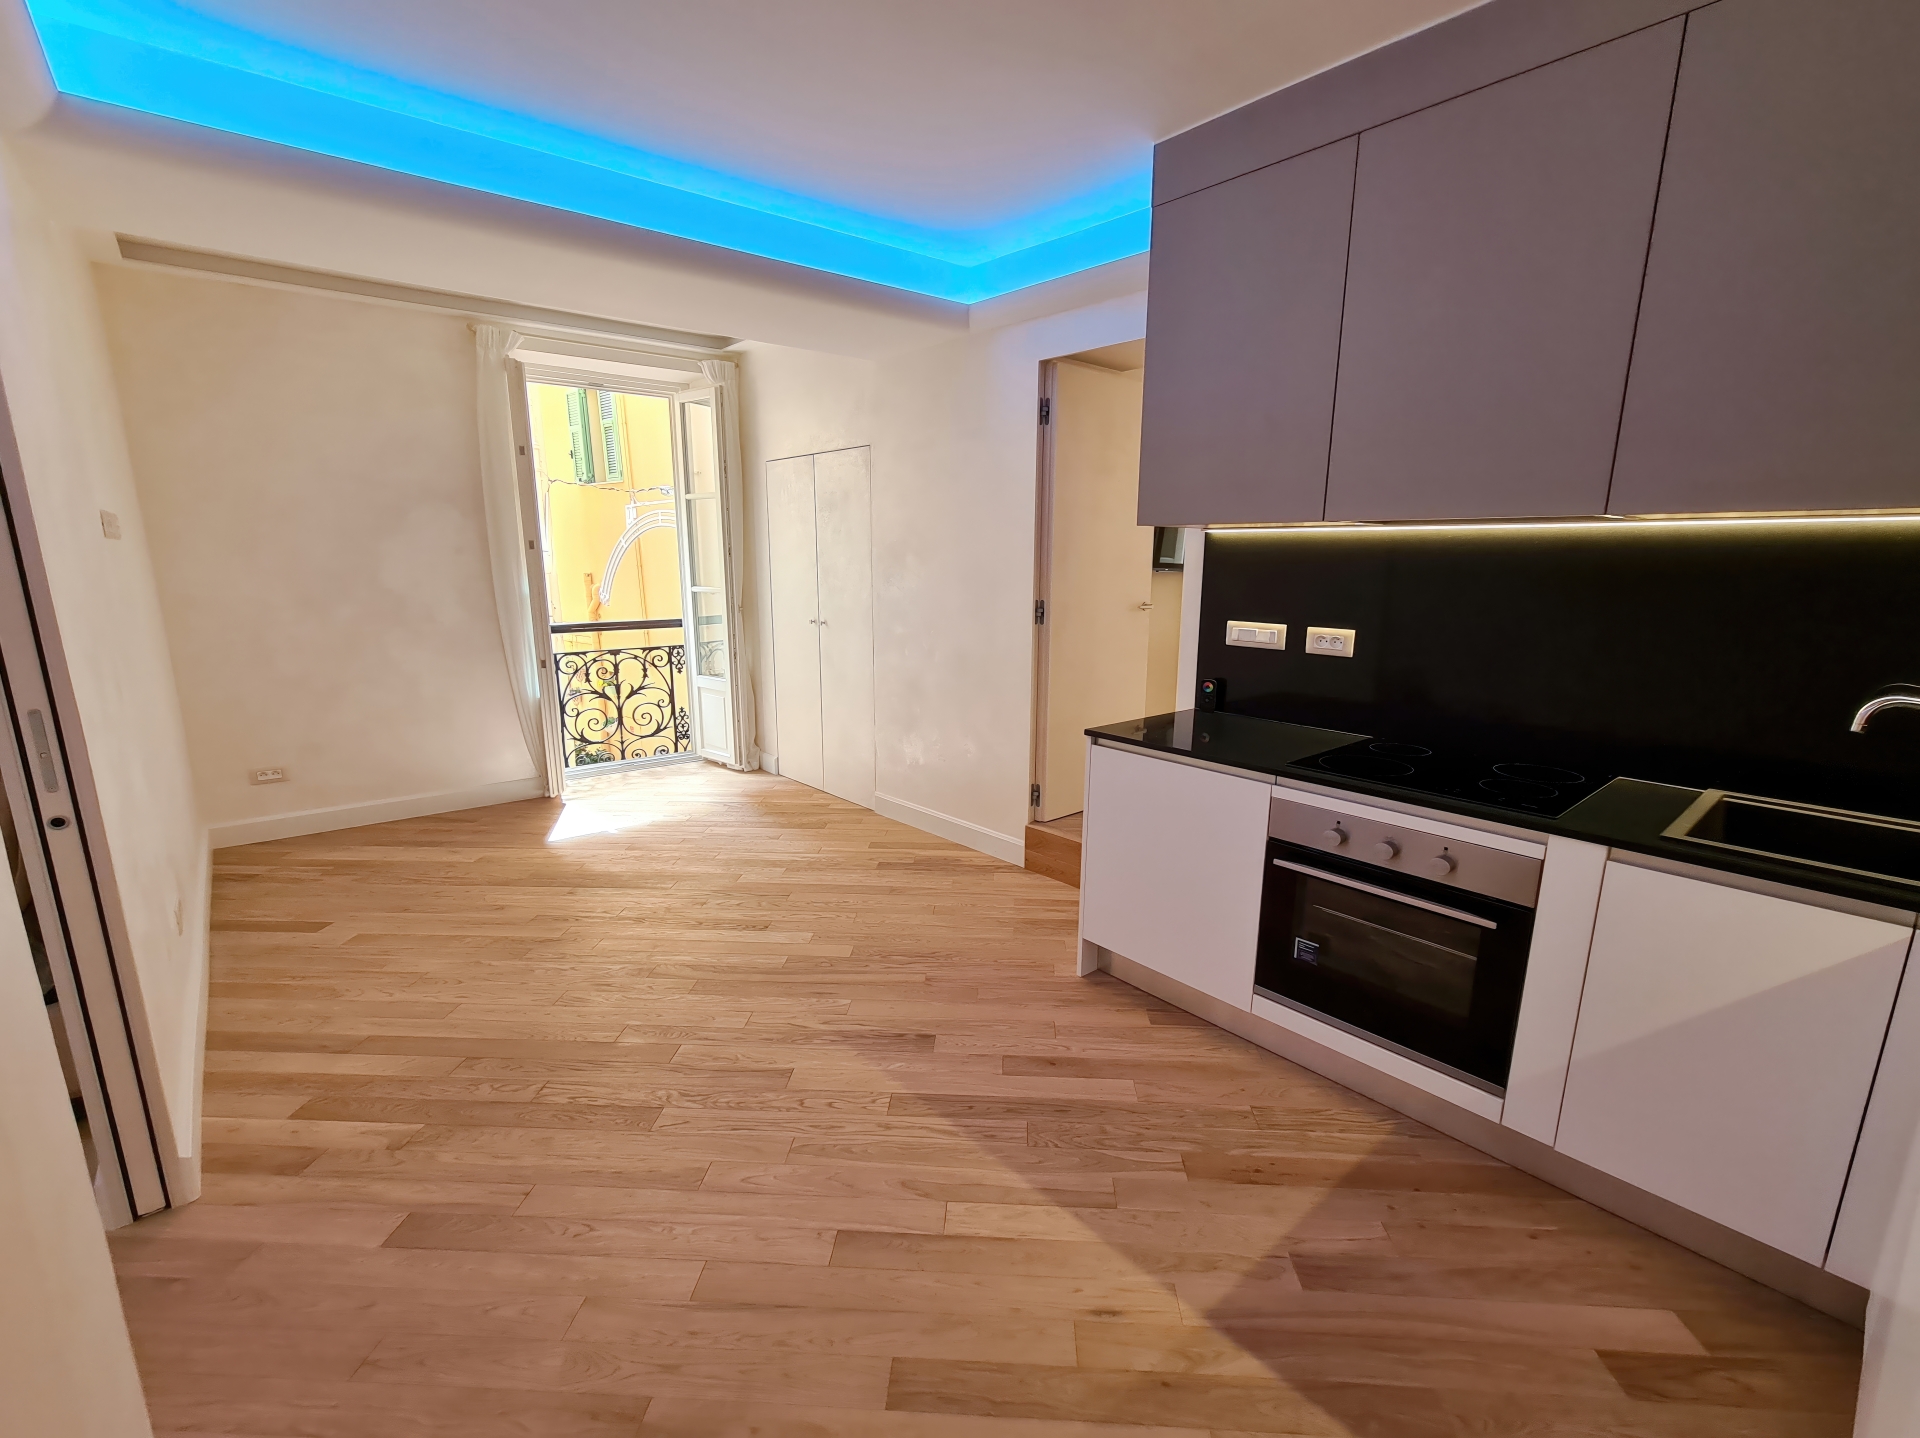 Dotta Appartement de 4 pieces a vendre - 32 rue Felix Gastaldi - Monaco-Ville - Monaco - imgsalon